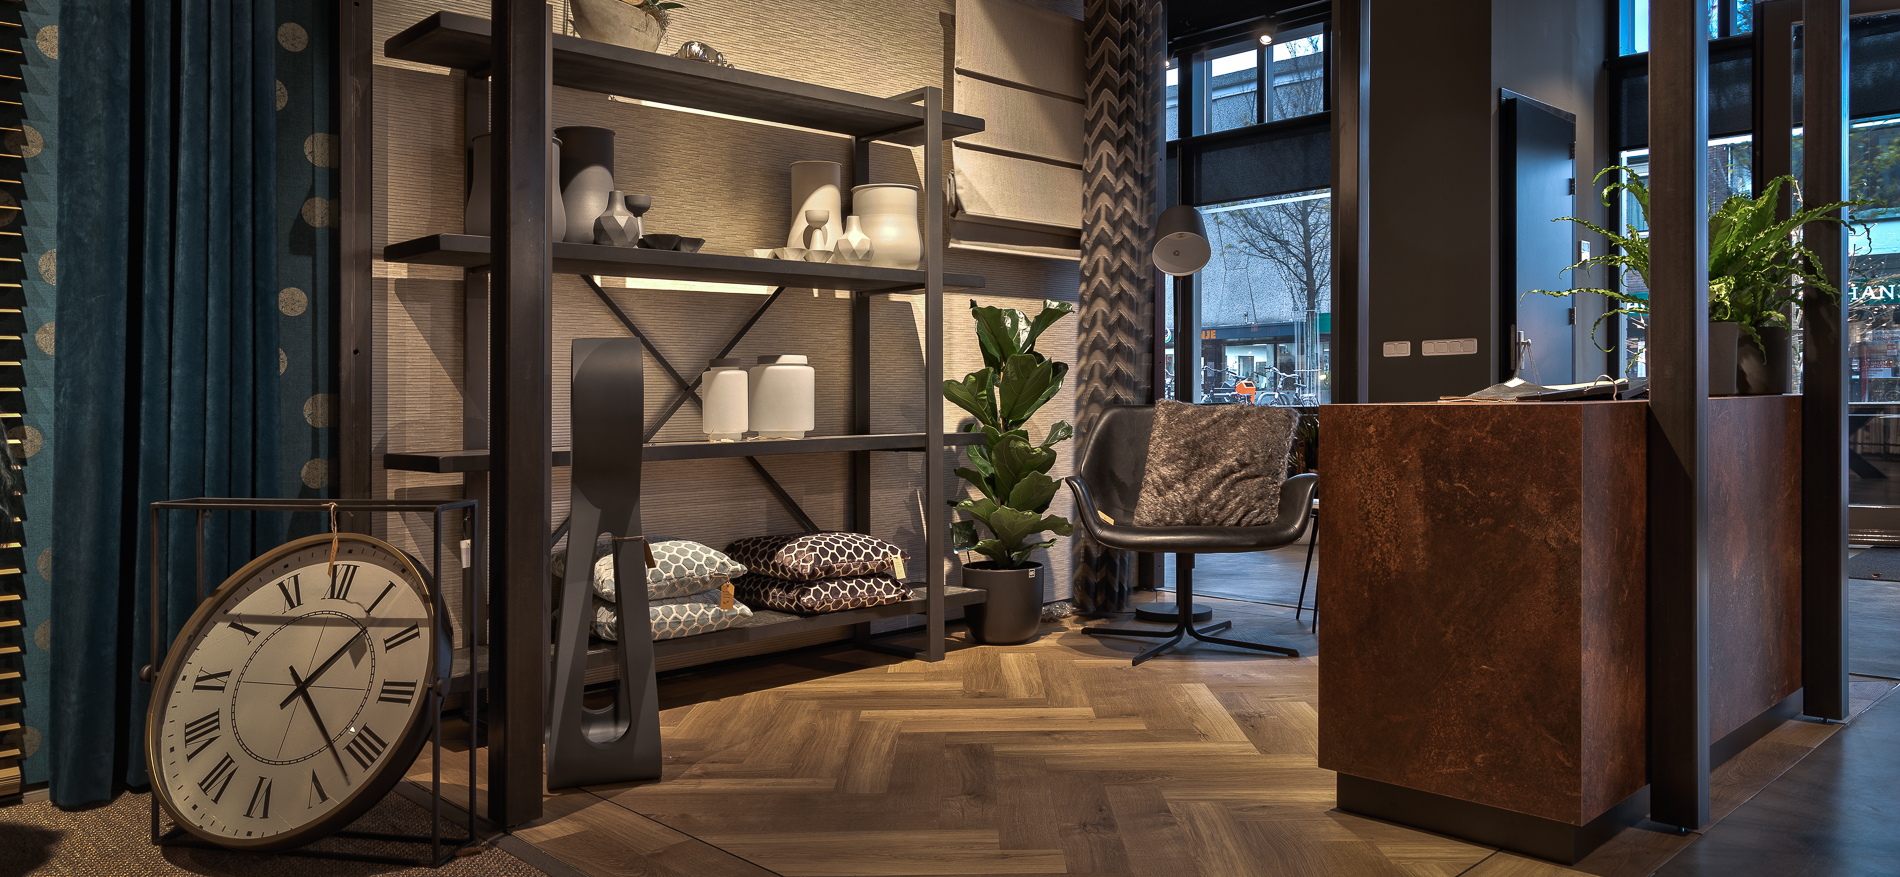 Karsten Woninginrichting | Den Helder - Home furnishings